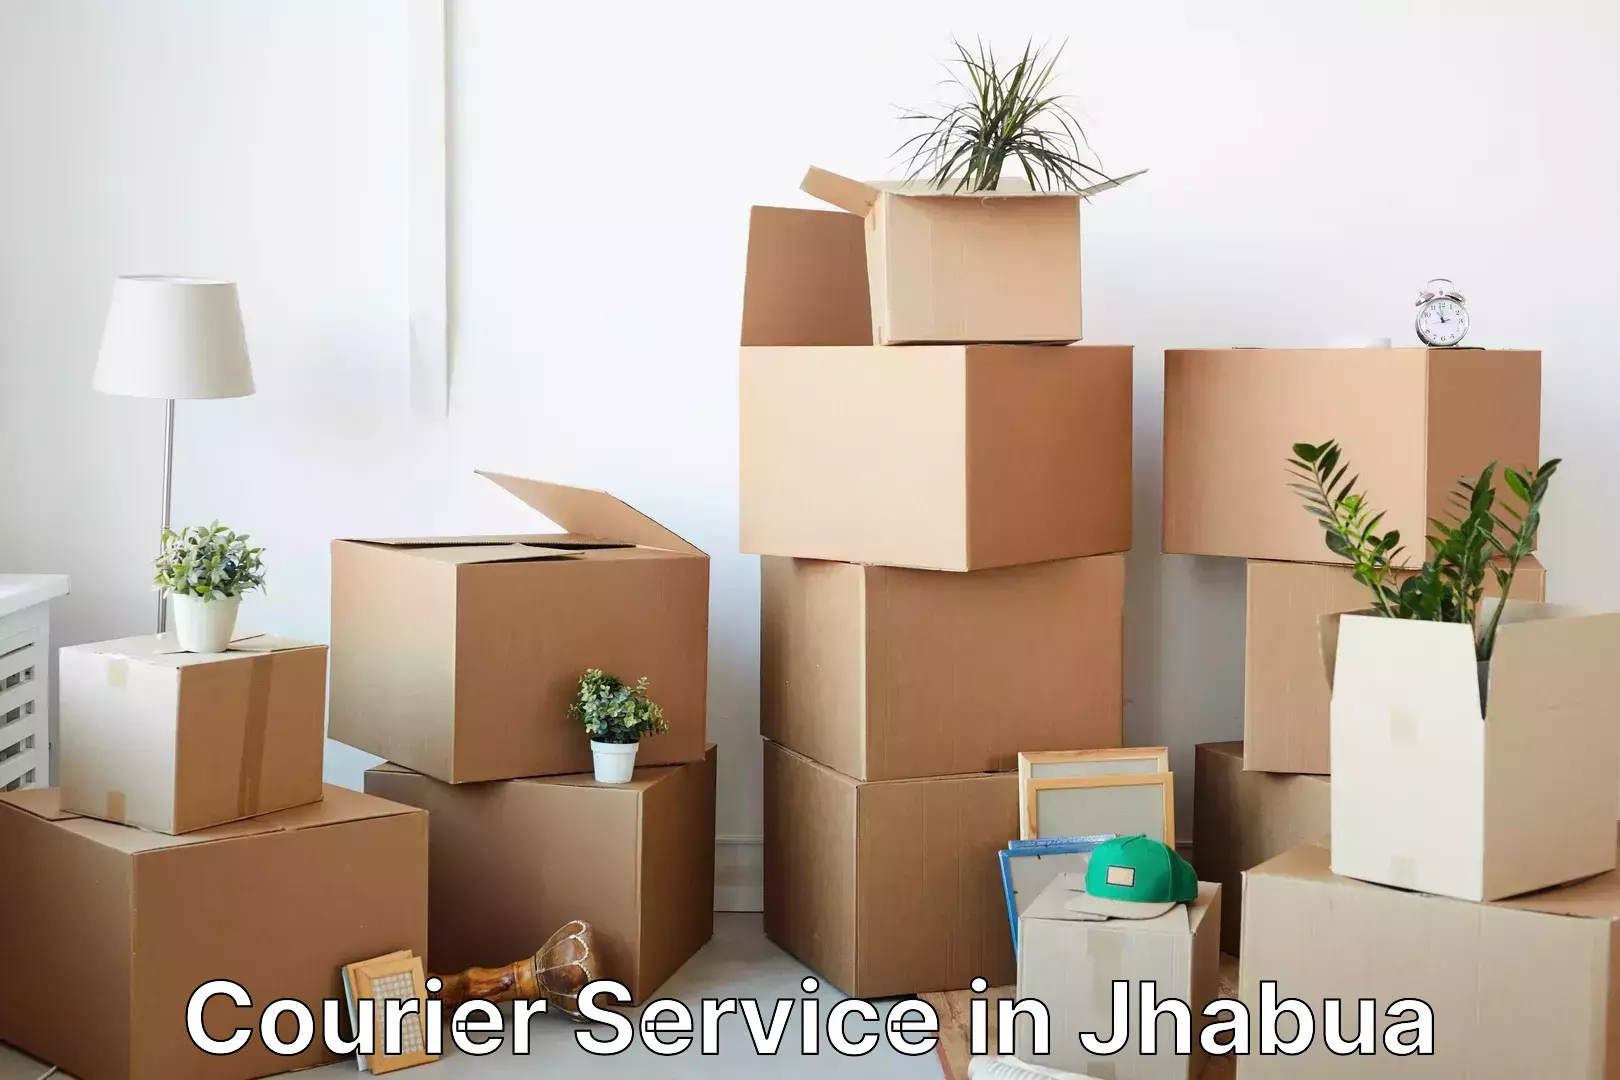 Customer-centric shipping in Jhabua